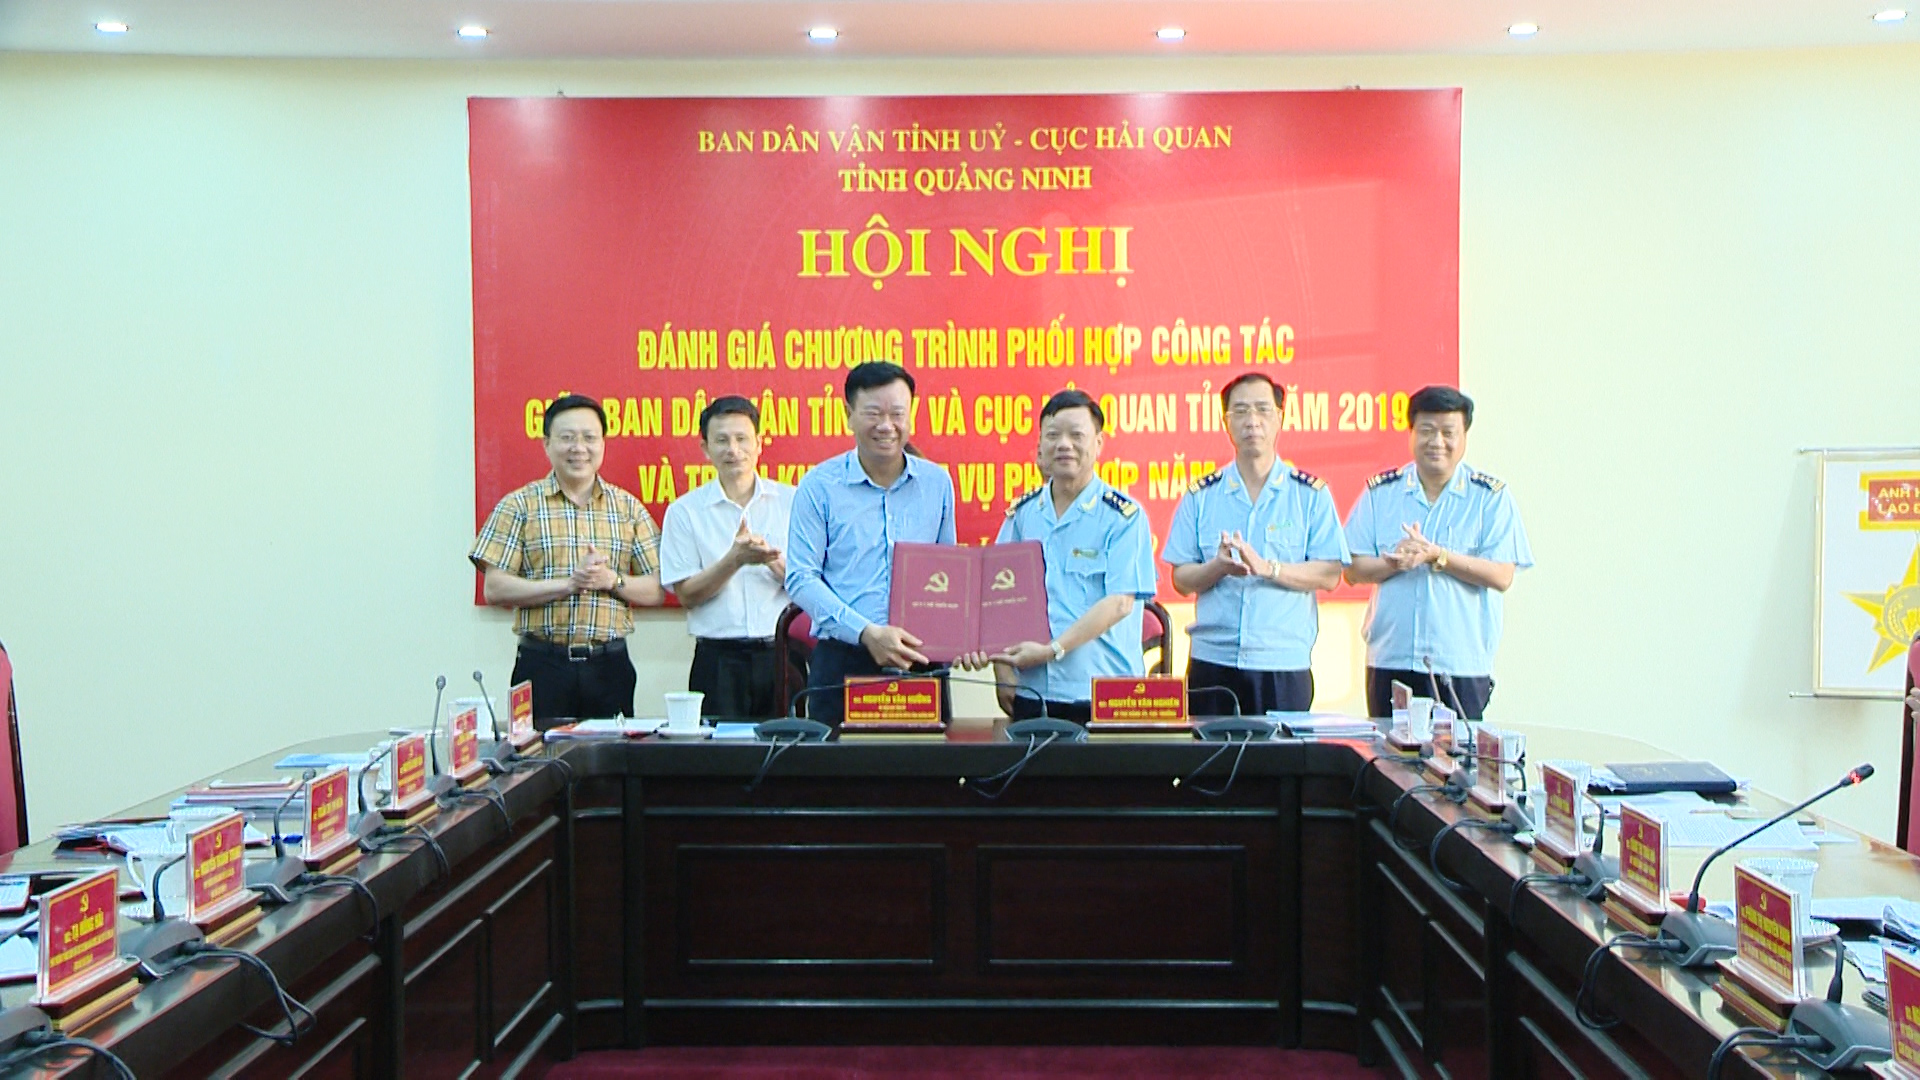 Ban Dân vận Tỉnh ủy và Cục Hải quan tỉnh Quảng Ninh ký kết chương trình phối hợp năm 2020